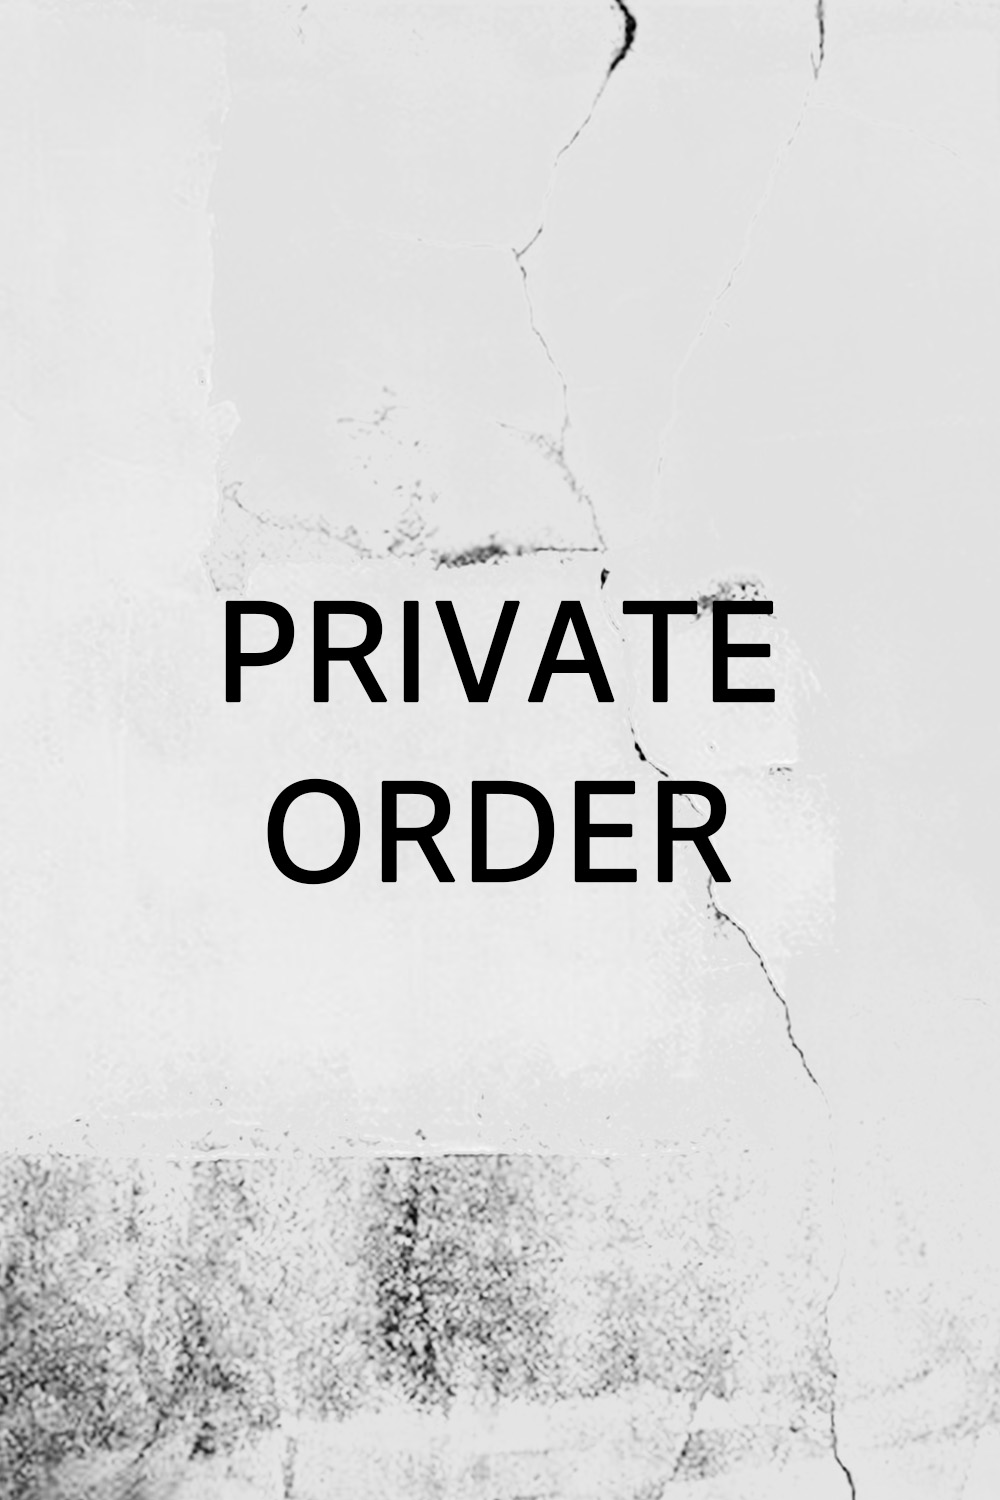 PRIVATE ORDER